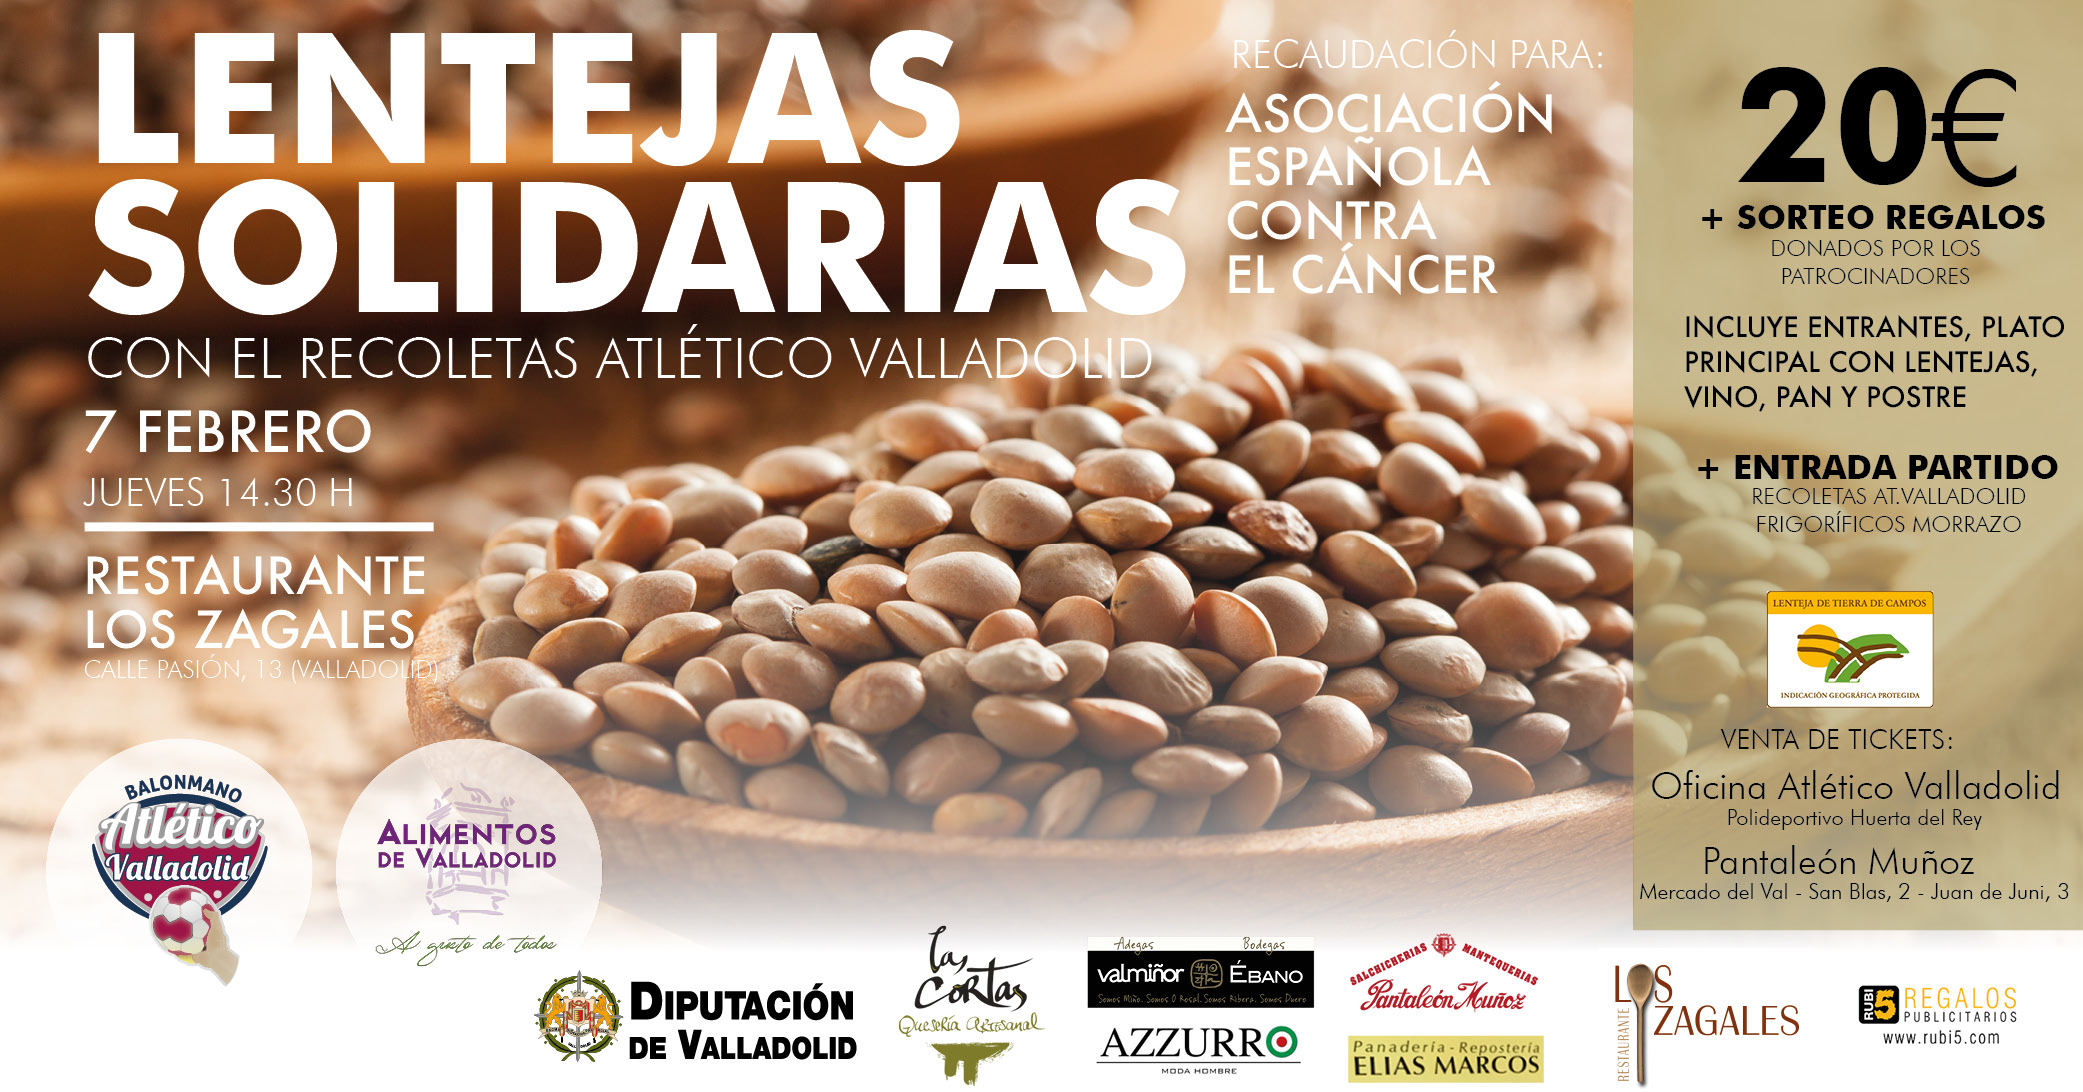 Lentejas Solidarias con el Recoletas Atlético Valladolid y Alimentos de Valladolid